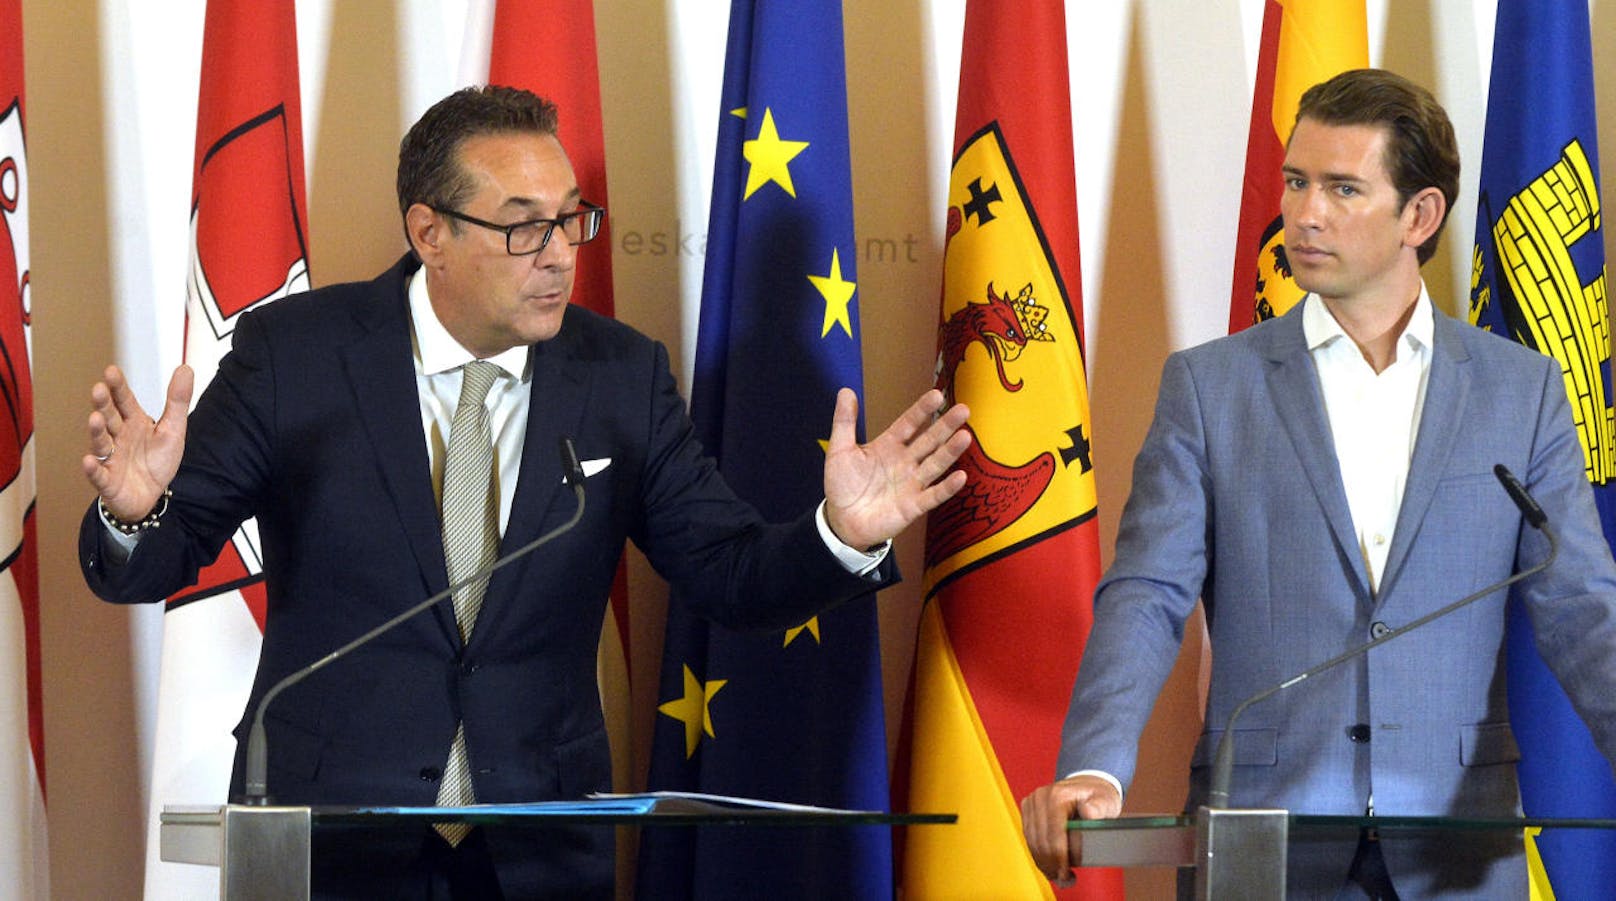 Vizekanzler Heinz-Christian Strache (FPÖ) und Bundeskanzler Sebastian Kurz (ÖVP) beim Pressefoyer nach einer Sitzung des Ministerrates am 22. August 2018.